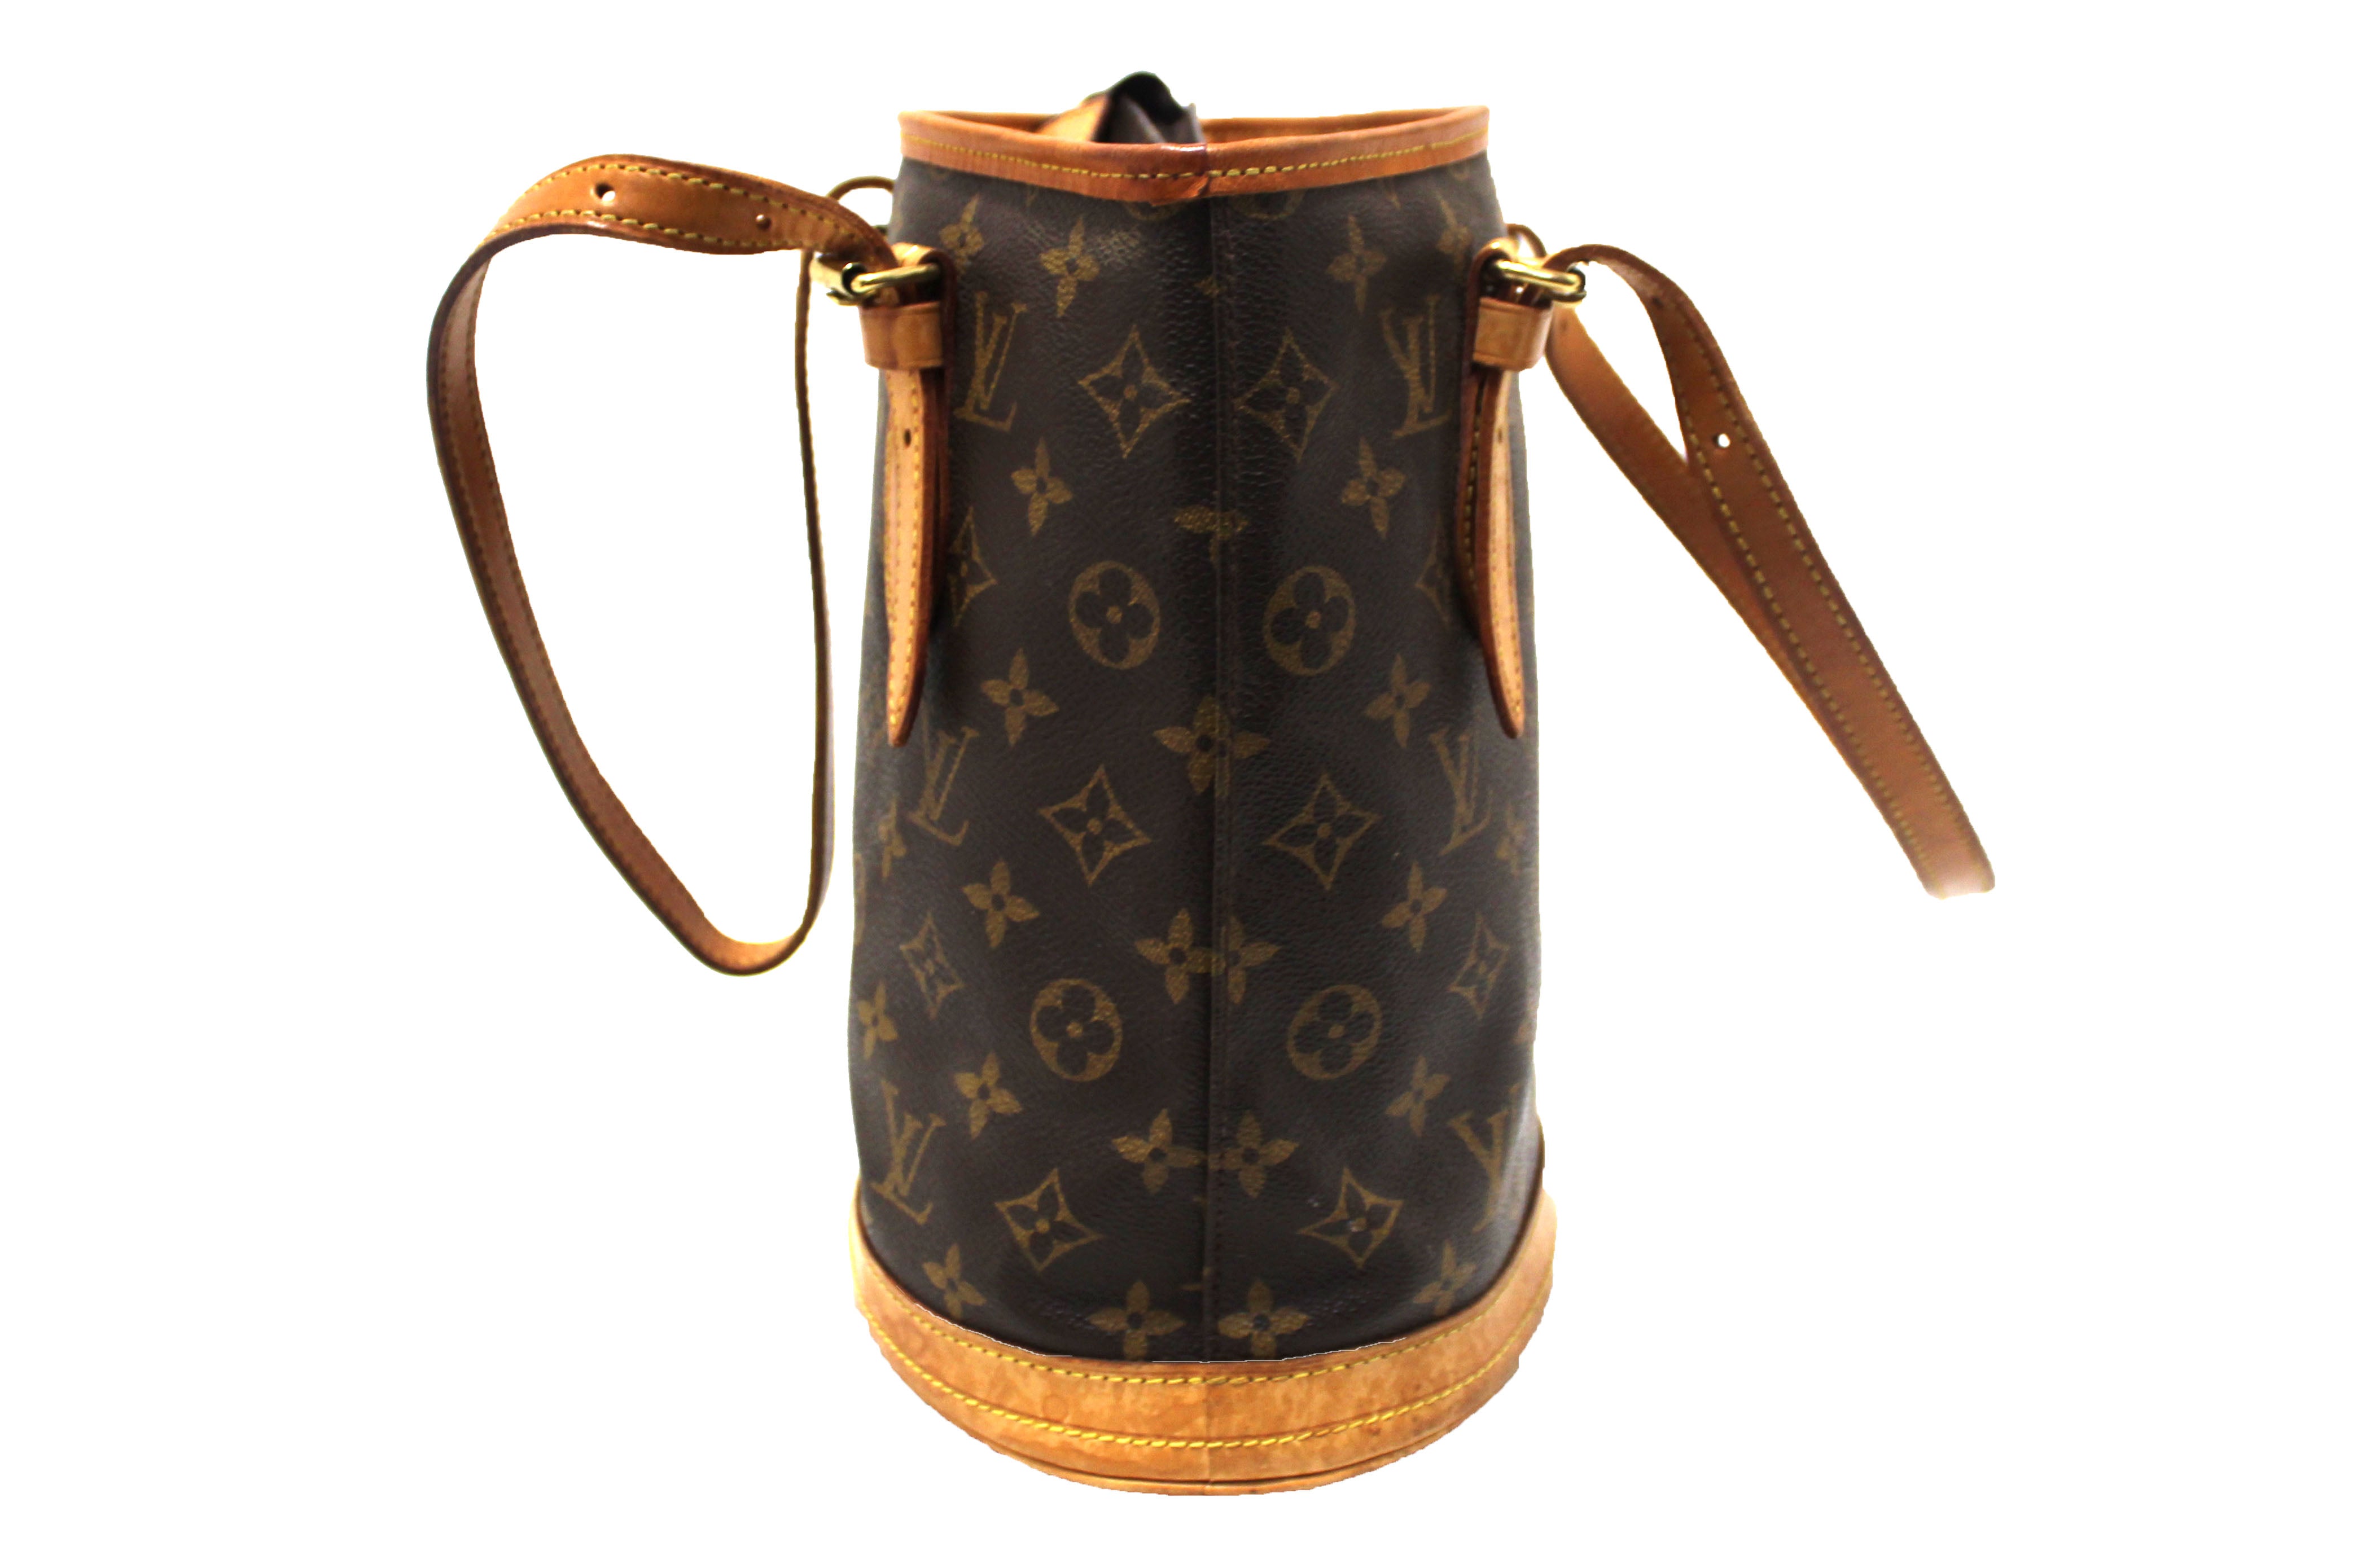 Authentic Louis Vuitton Vintage Bucket Bag PM Monogram 